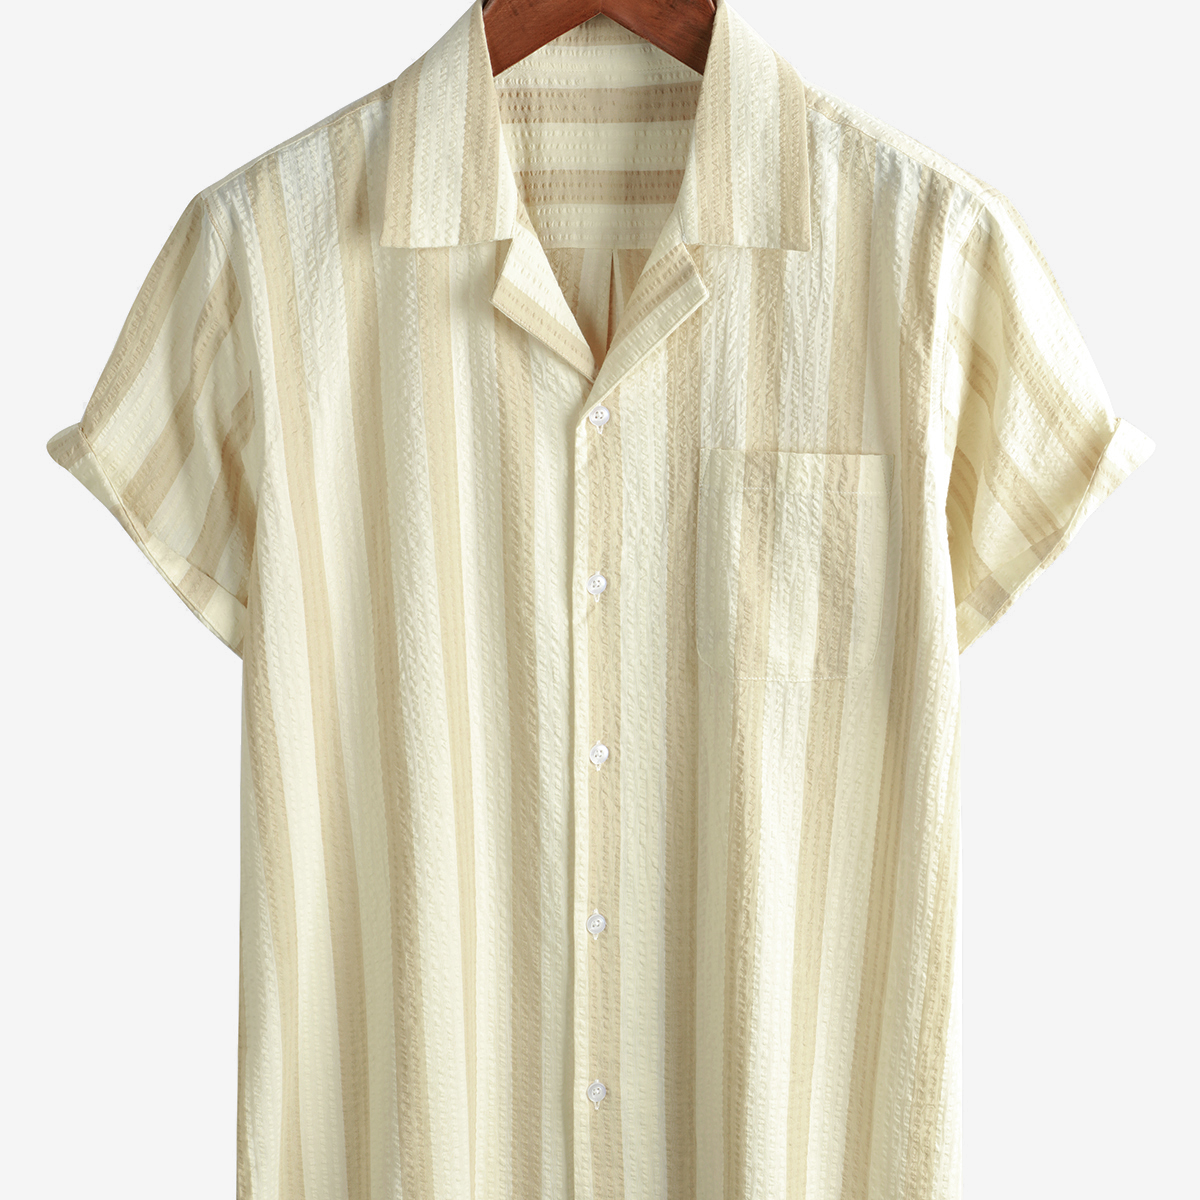 Men's Striped Pocket Beach Short Sleeve Button Up Summer Shirt